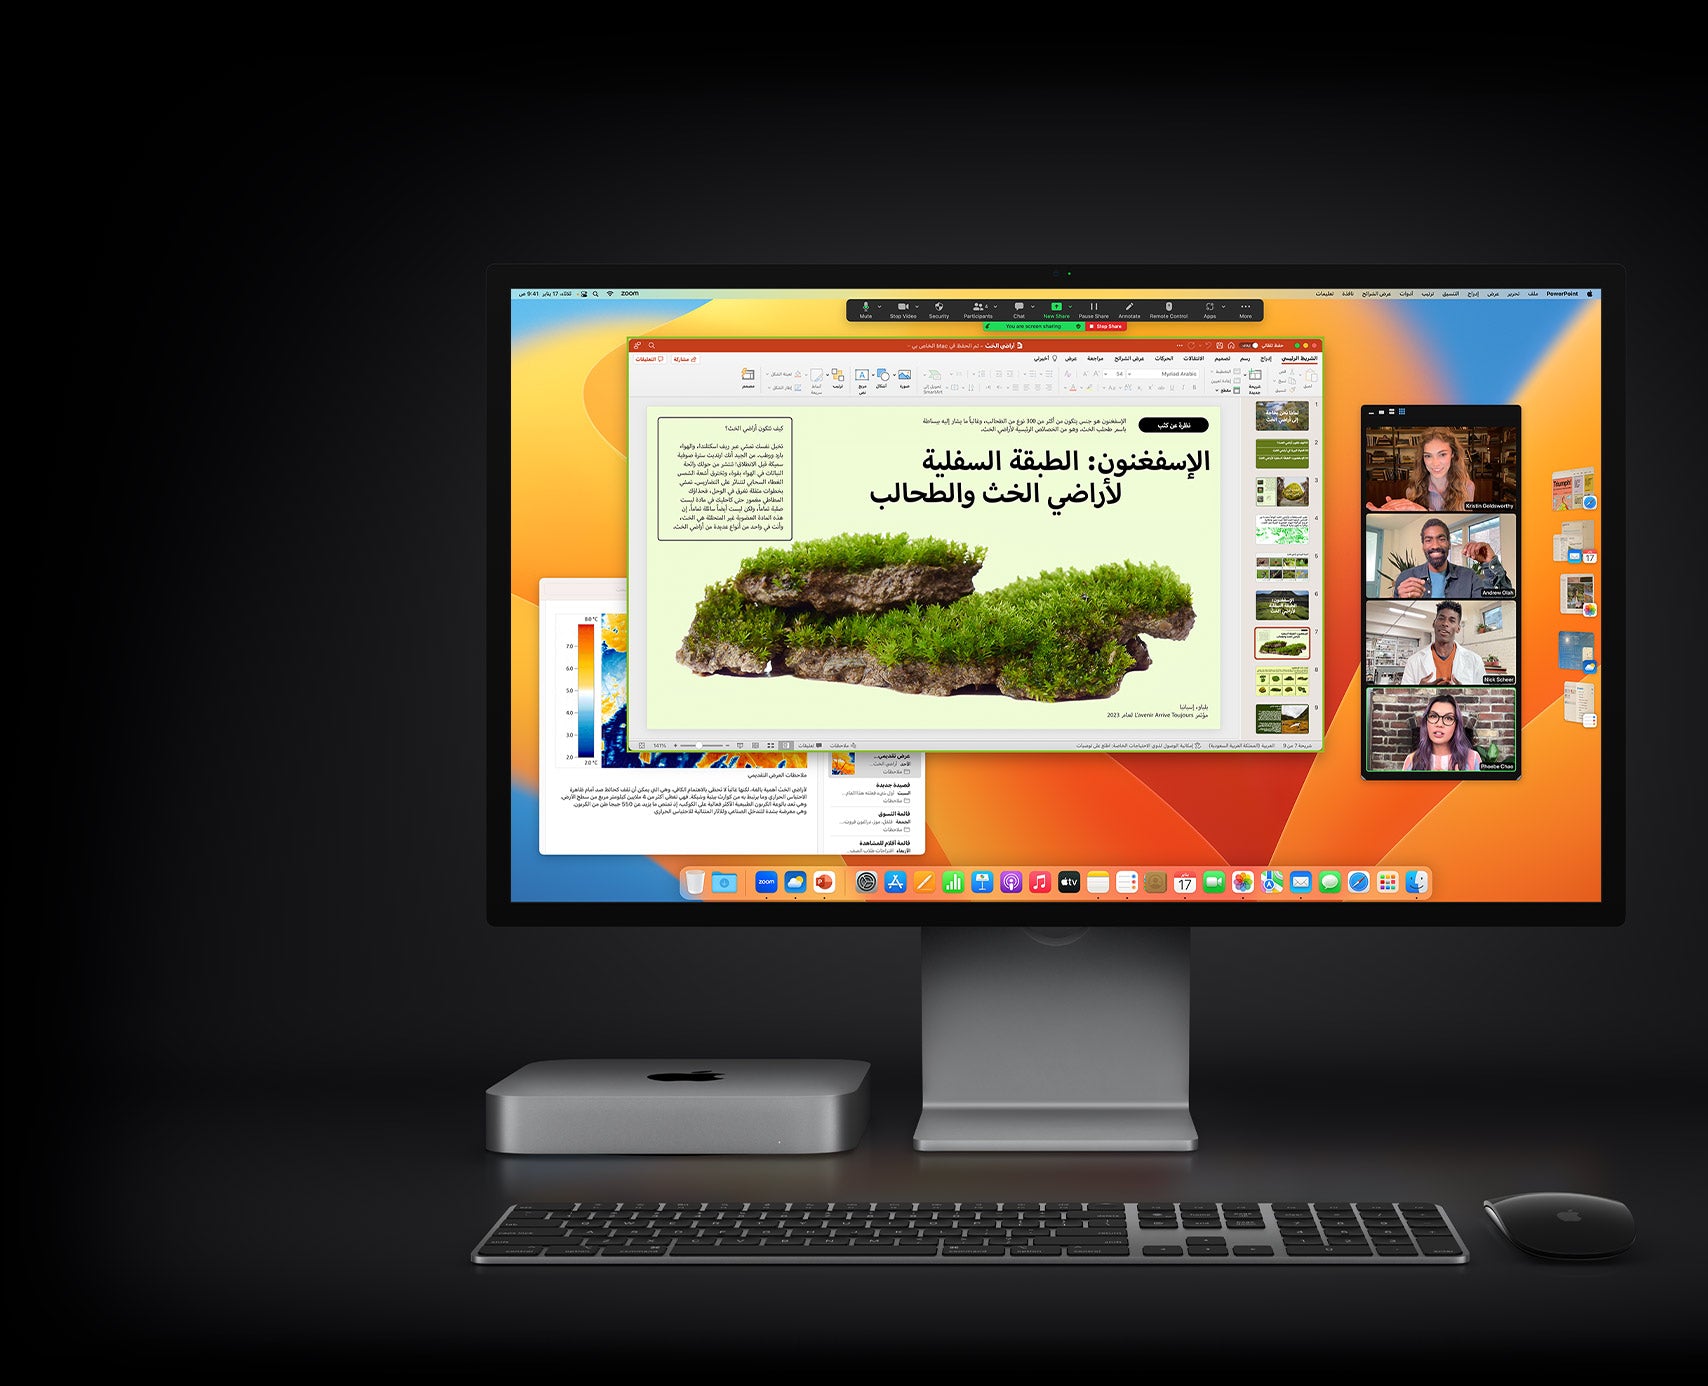 جهاز Mac mini مع ماجيك ماوس ولوحة مفاتيح ماجيك وشاشة Studio Display يظهر عليها عرض تقديمي Microsoft PowerPoint تجري مشاركته في اجتماع على Zoom ويظهر في الخلفية تطبيق الملاحظات.